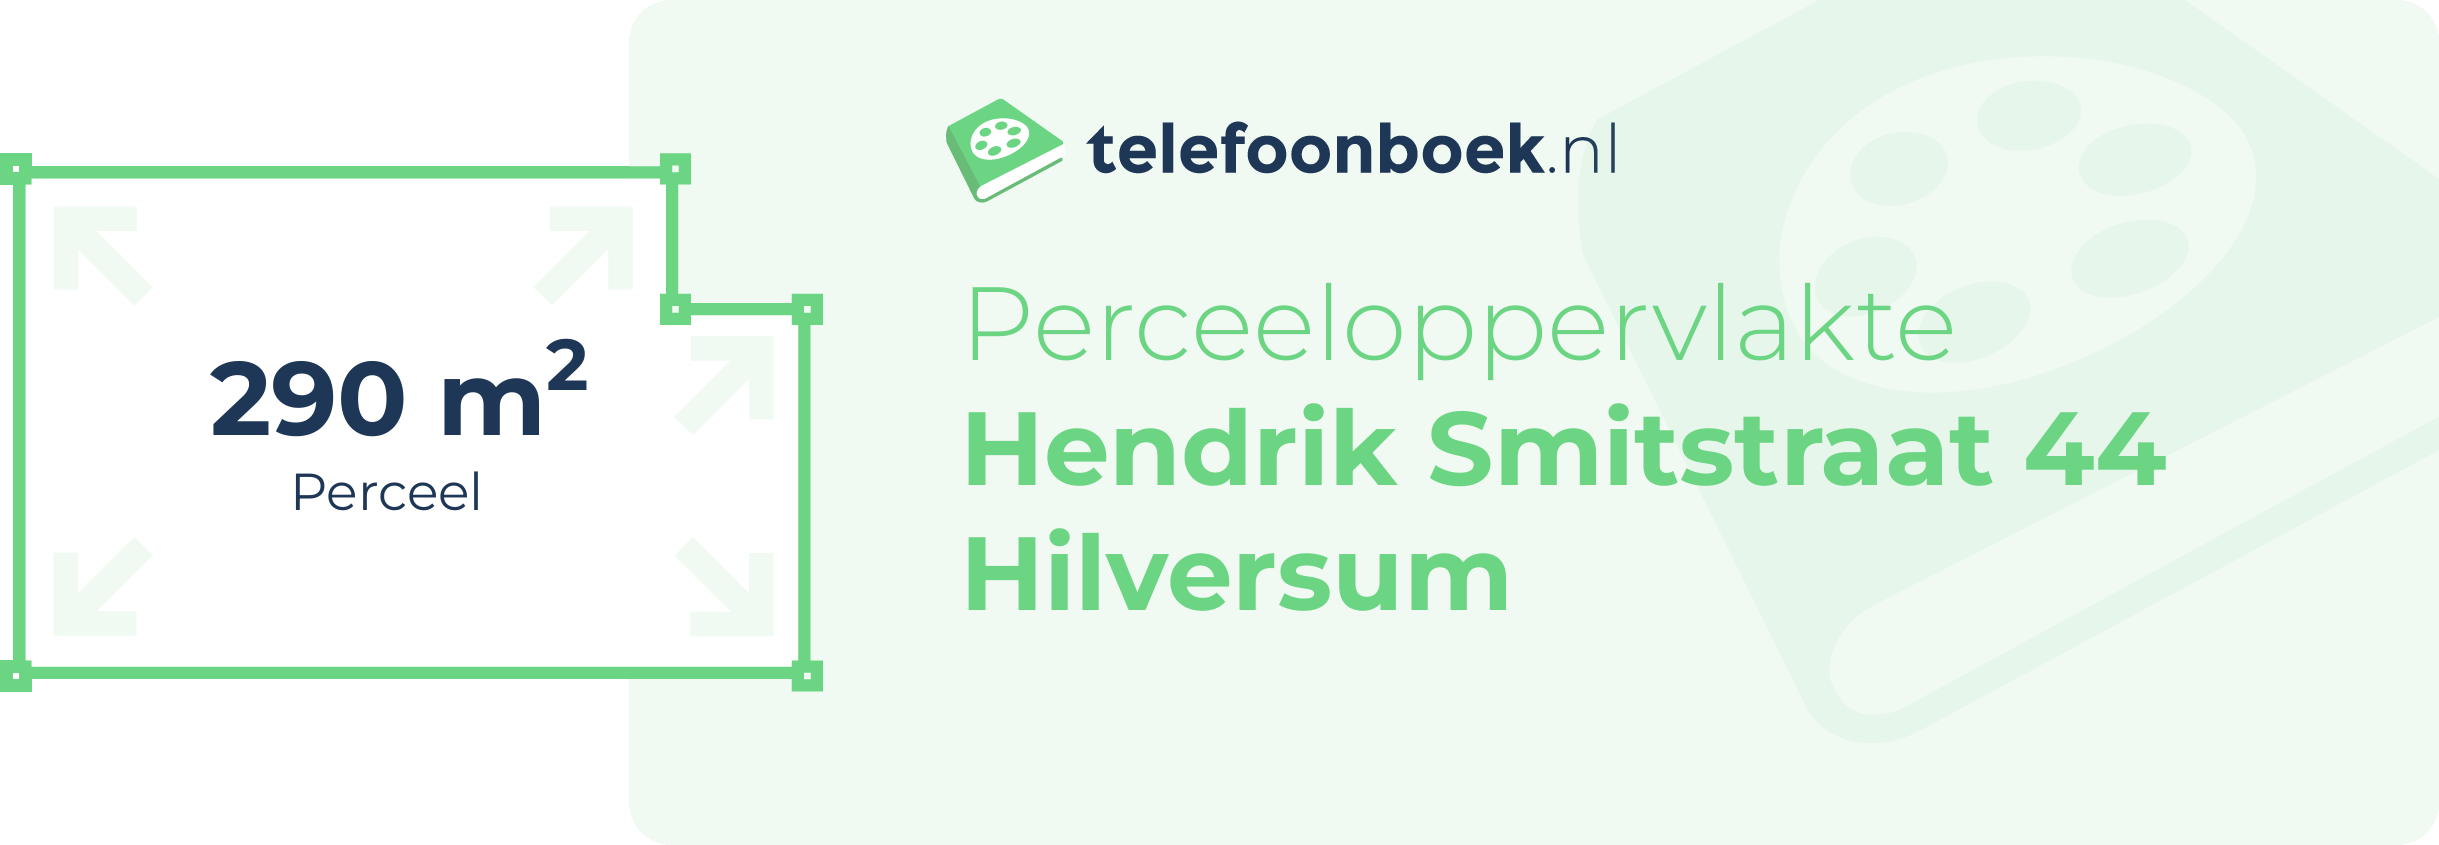 Perceeloppervlakte Hendrik Smitstraat 44 Hilversum